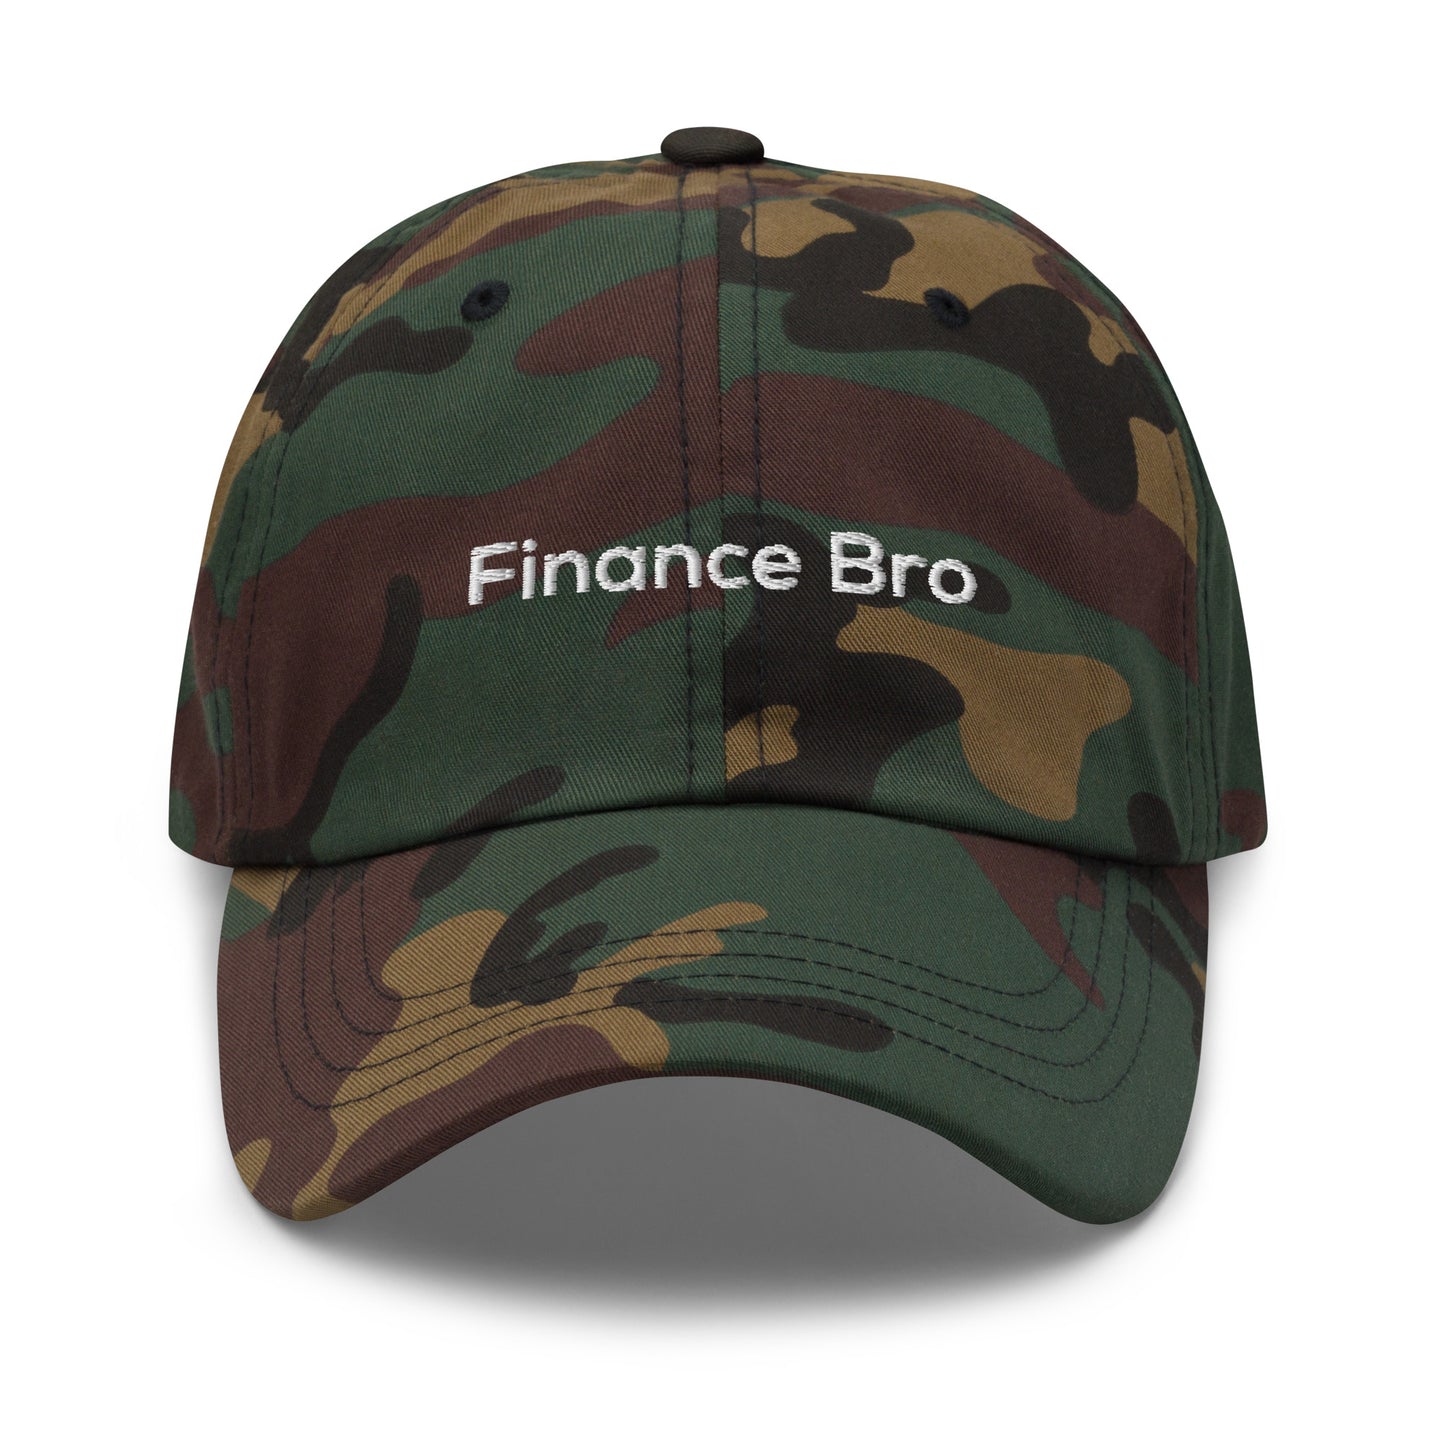 Finance Bro Cap